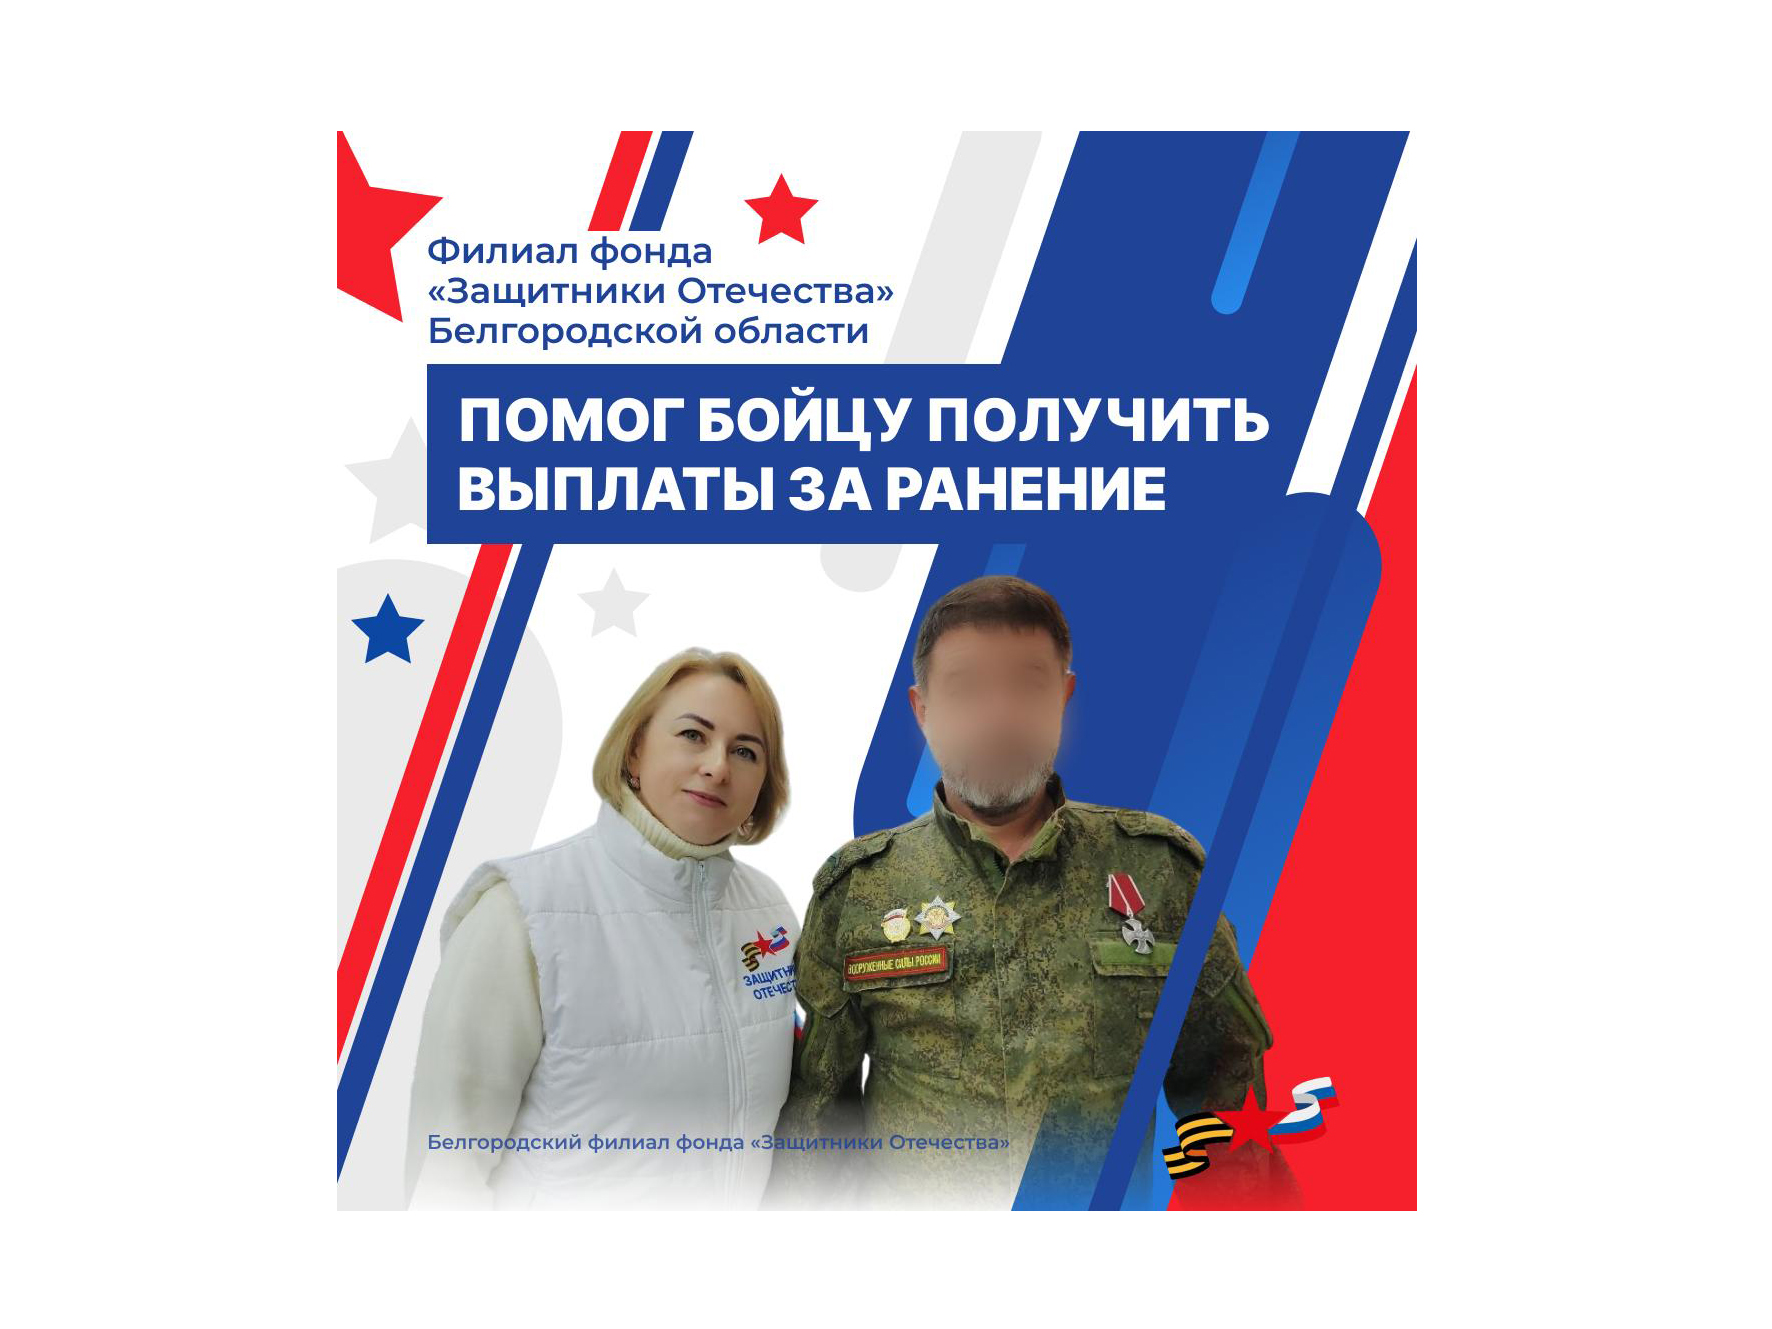 Сотрудники филиала фонда «Защитники Отечества» Белгородской области помогли военнослужащему получить положенные выплаты.